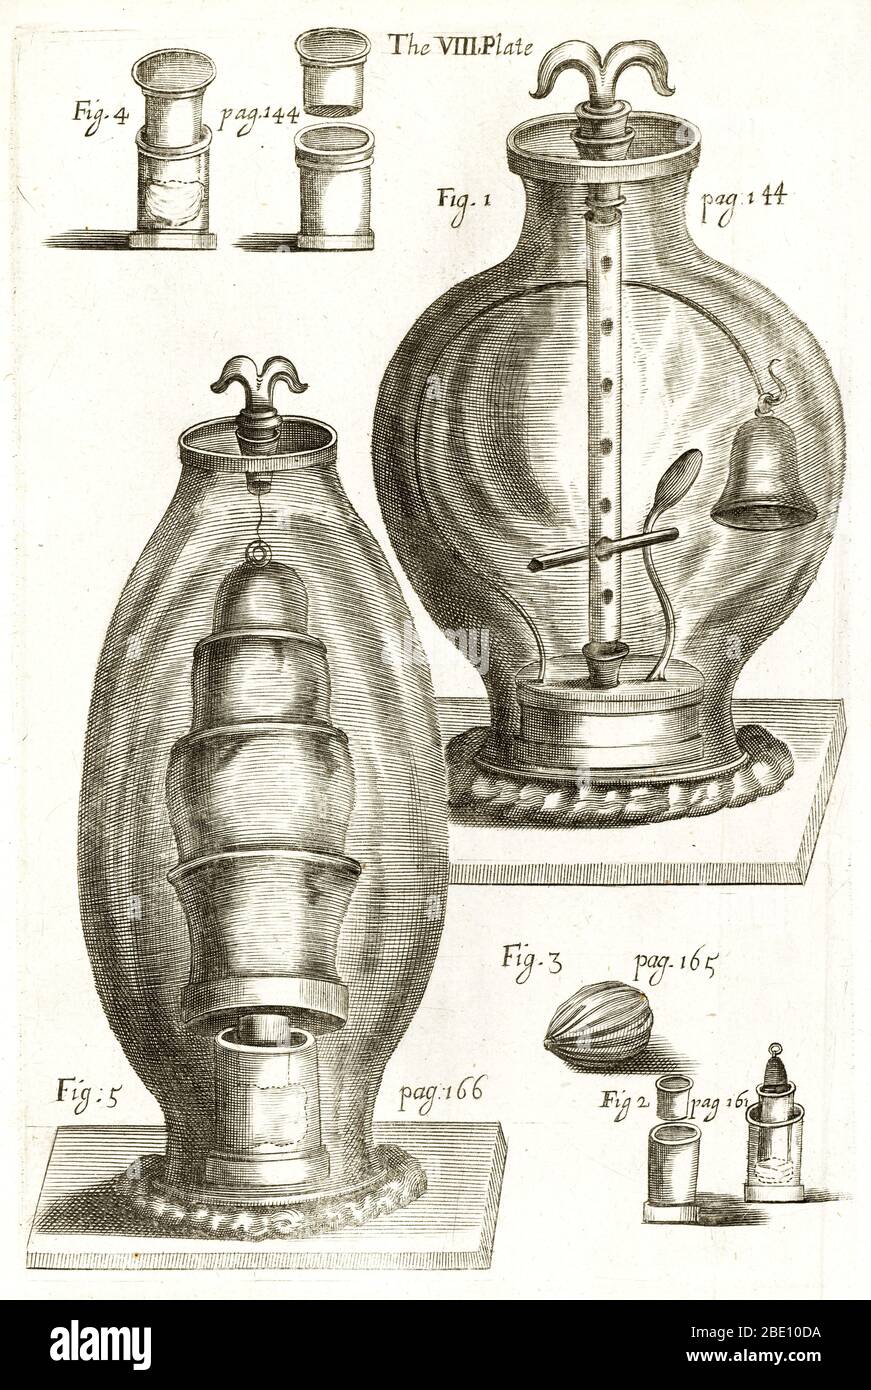 Esperimenti di Boyle sull'aria. Opera d'arte dell'apparecchio per esperimenti sull'aria realizzato dal filosofo naturale inglese Robert Boyle (1627-1691). In alto a destra, una campana viene suonata sotto vuoto. Questa opera è tratta dal lavoro di Boyle, una continuazione di New Experiments fisico-meccanico, toccando la primavera e il peso dell'aria, e i loro effetti (1669). Questa era la continuazione di un precedente lavoro del 1660, seguito da una seconda parte nel 1682. In questi lavori, Boyle descrisse i suoi esperimenti sull'aria, compresa la legge del gas che gli fu chiamata. Ha anche indagato l'effetto di un vuoto sul suono, magnetico Foto Stock